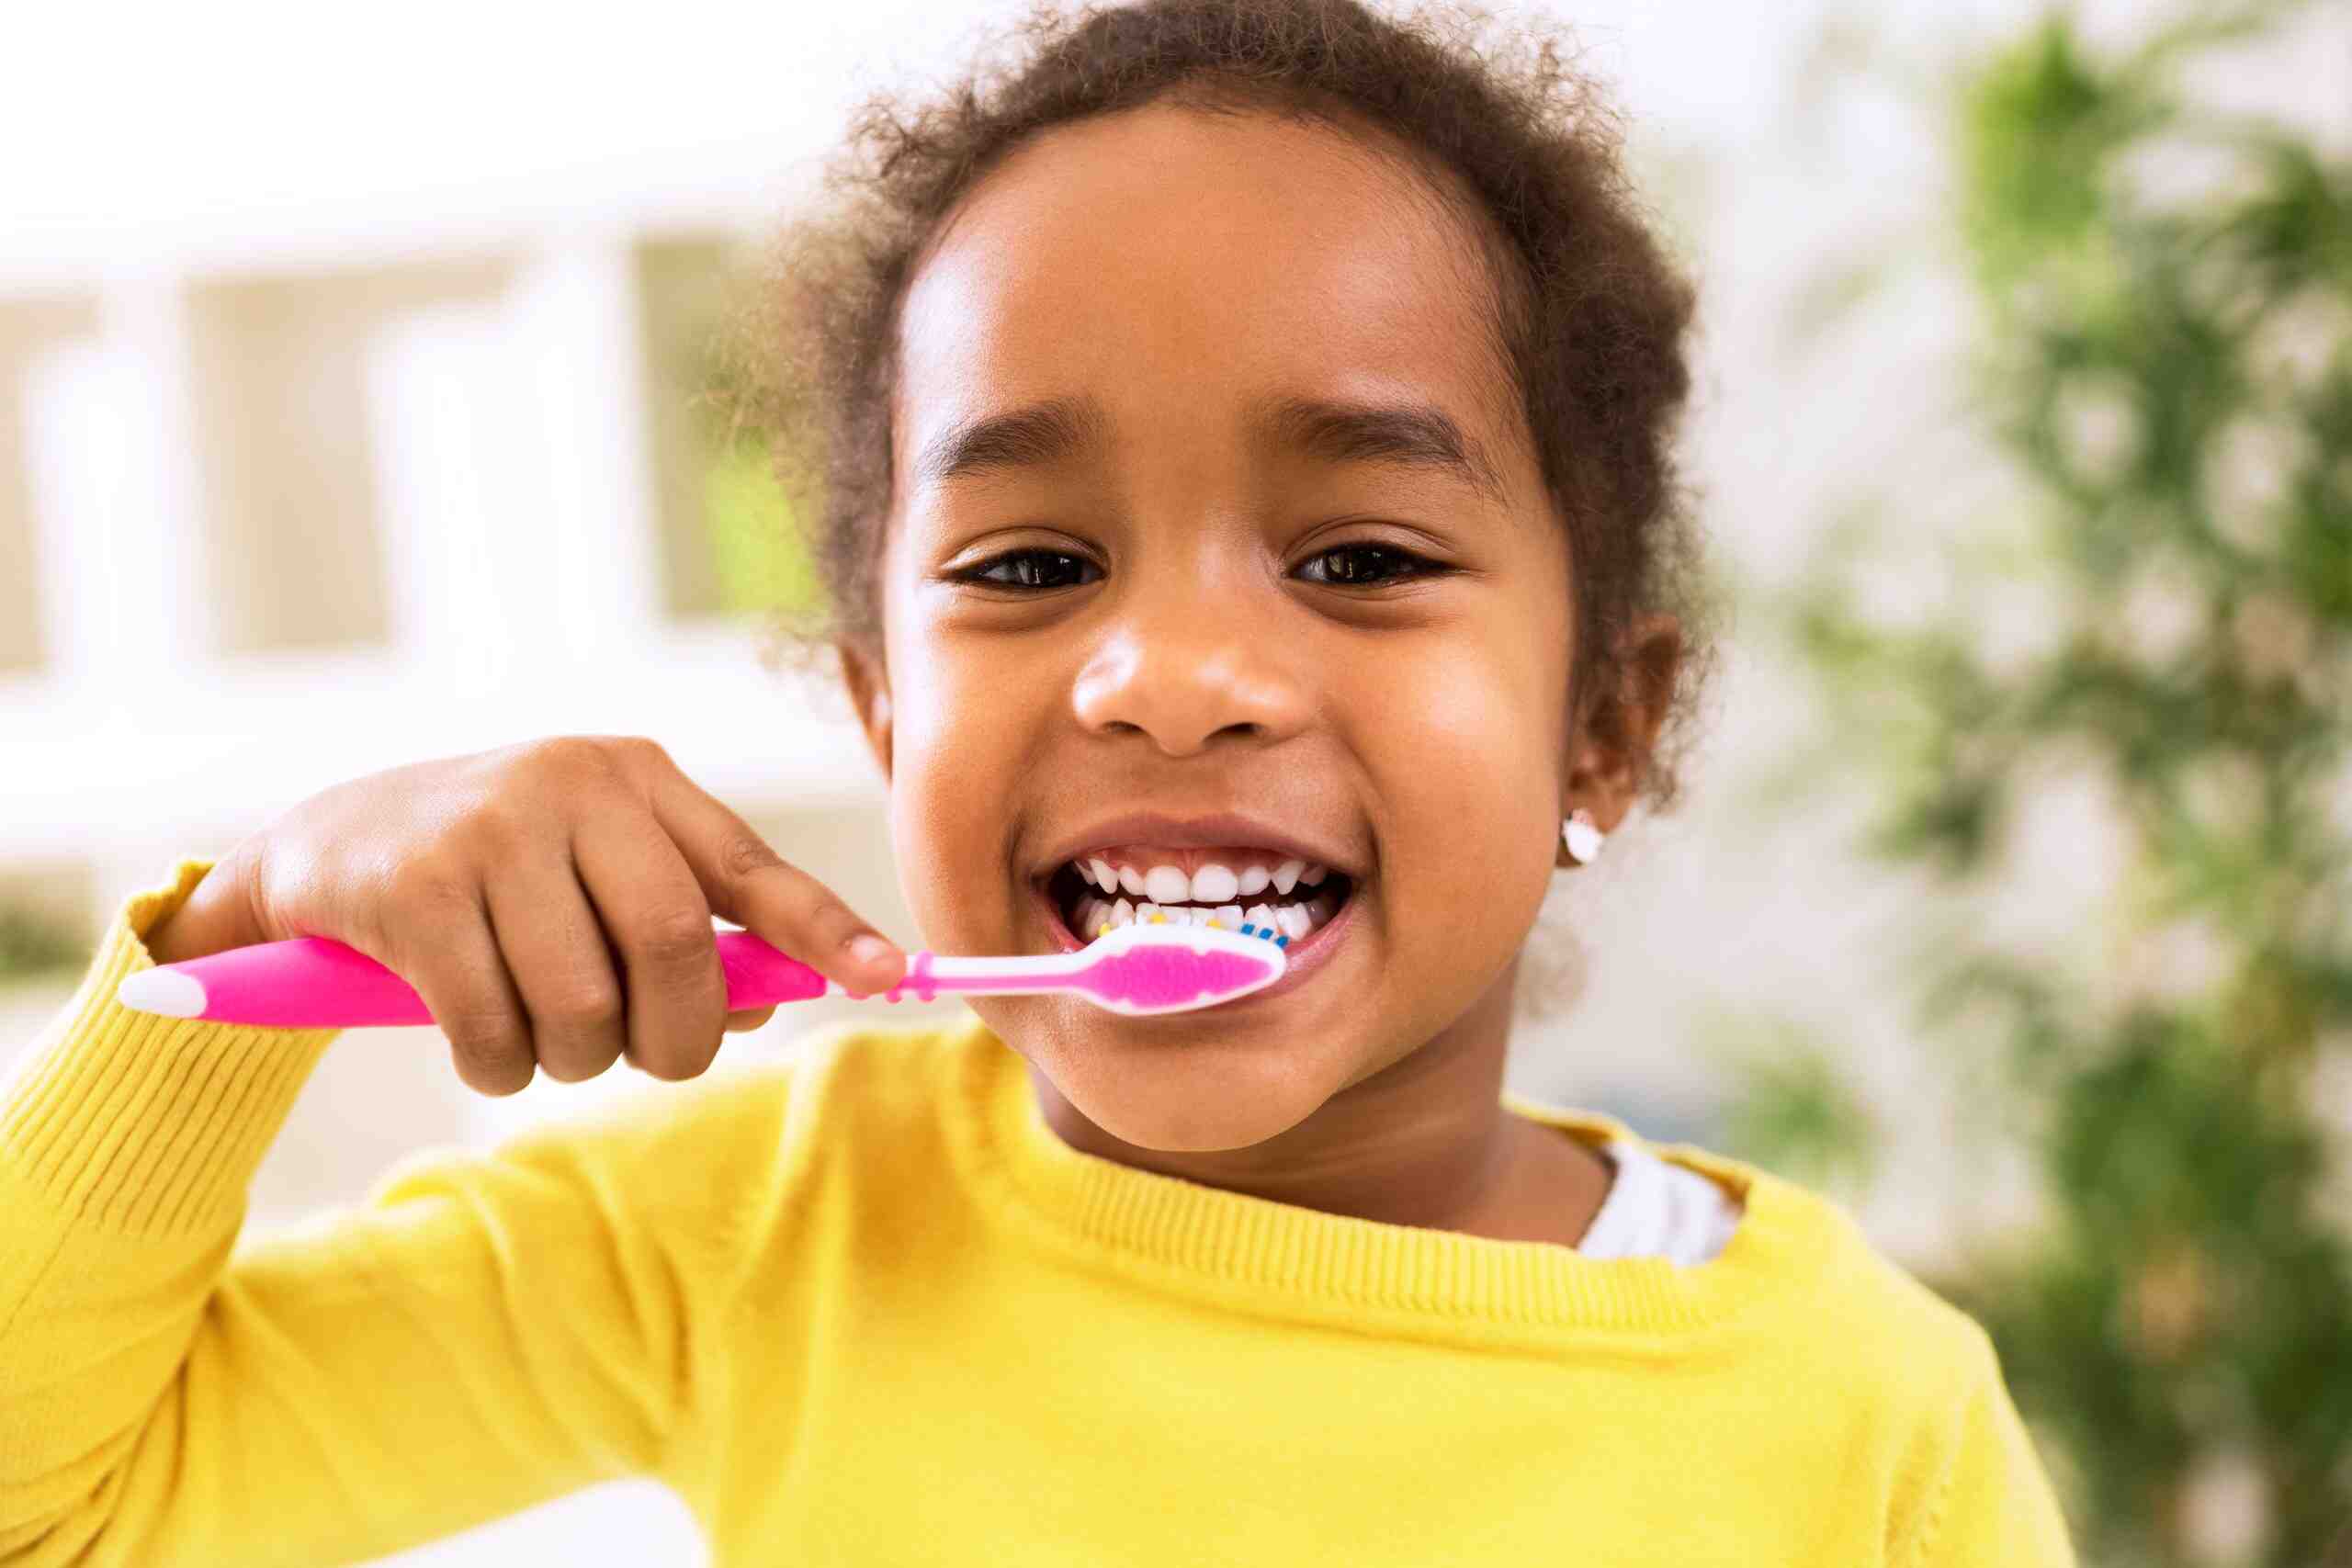 protect kids teeth by brushing teeth